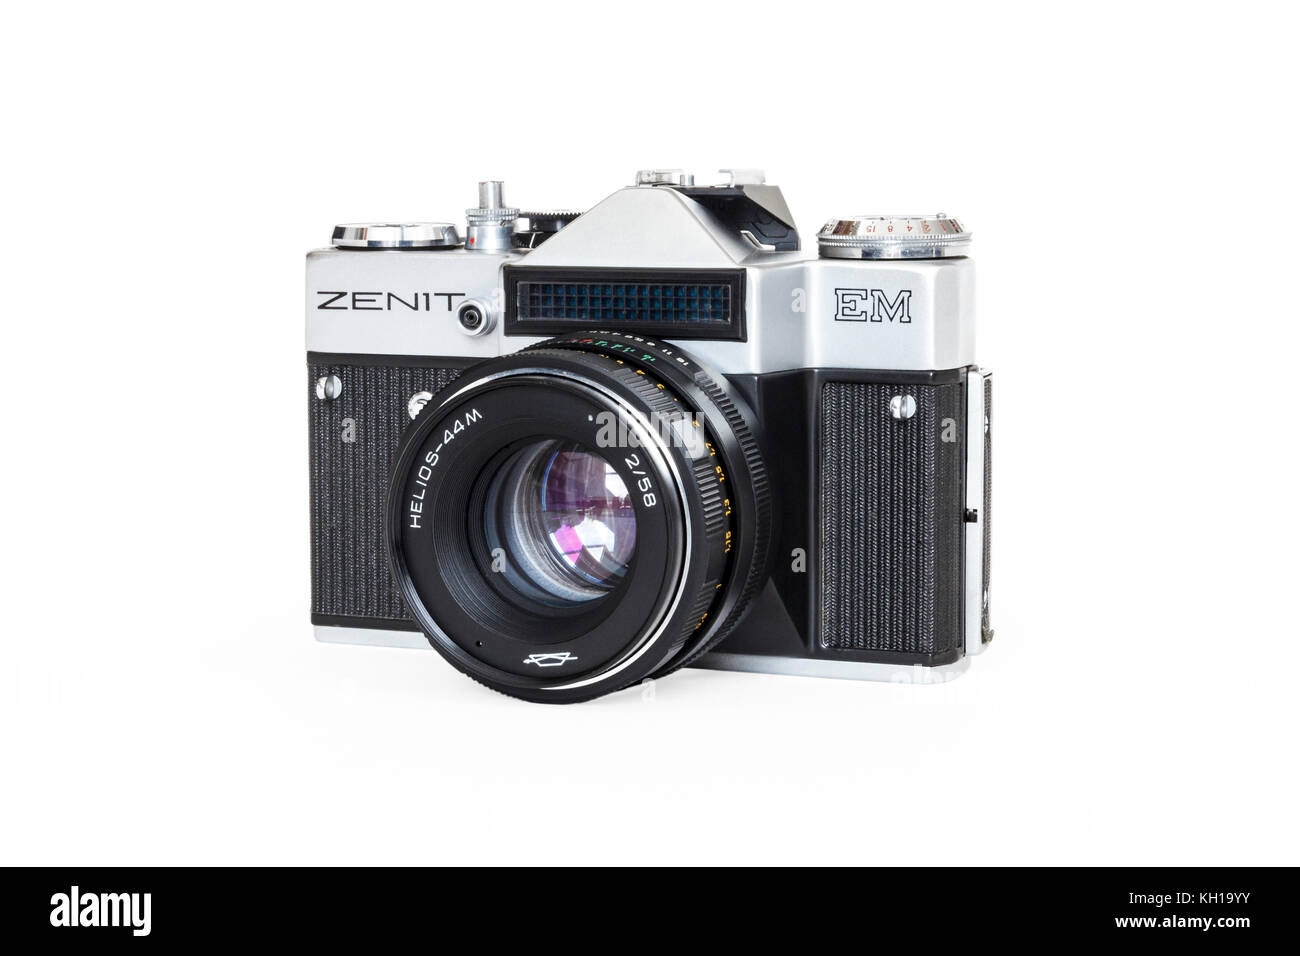 Zenit EM 35mm SLR 35mm Pellicole in rotoli fotocamera con obiettivo da 50 mm, degli anni ottanta, realizzati in URSS, isolata contro uno sfondo bianco Foto Stock